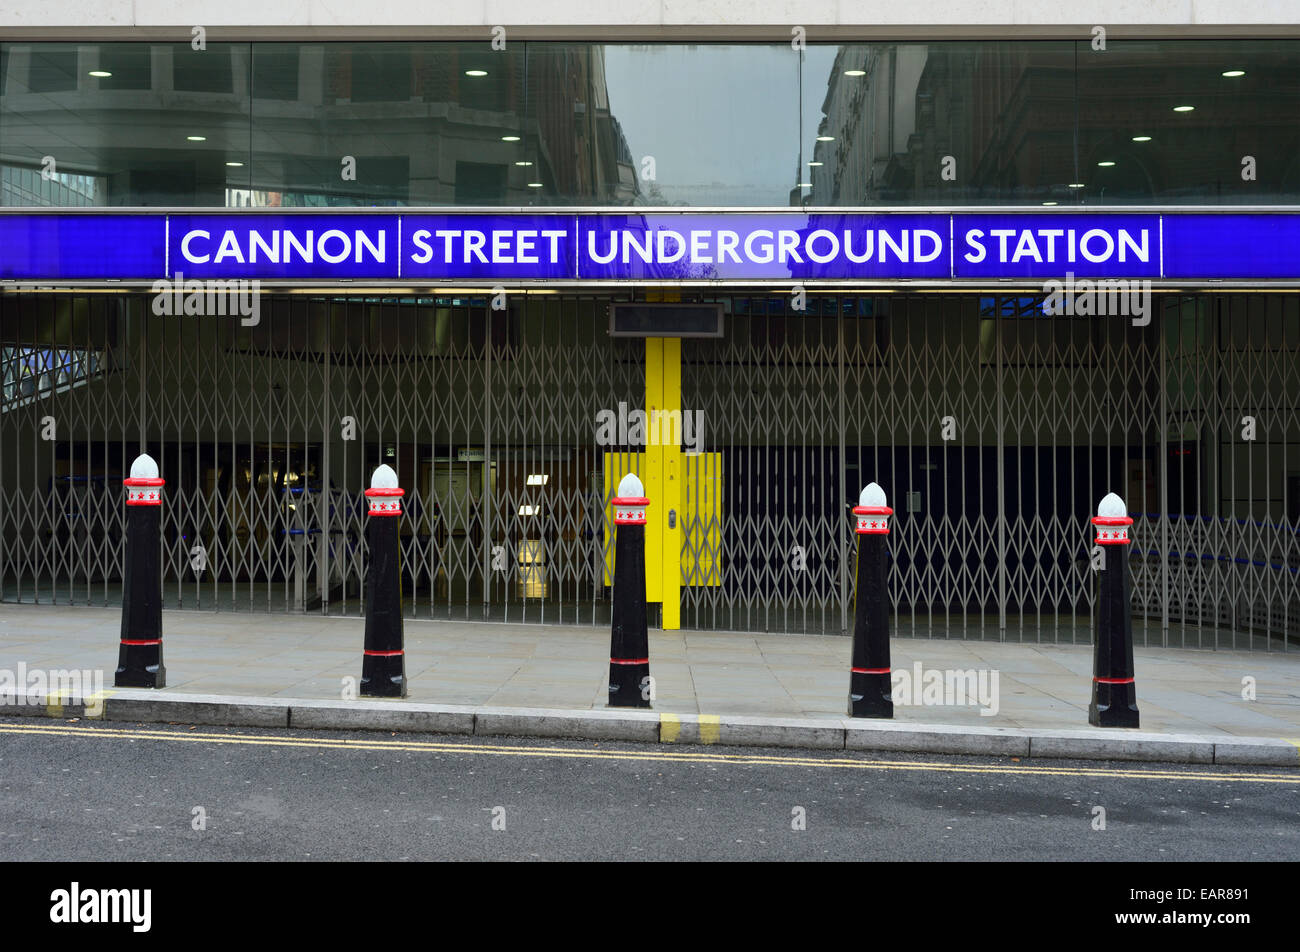 Cannon Street Underground Station entrance, London, United Kingdom Stock Photo